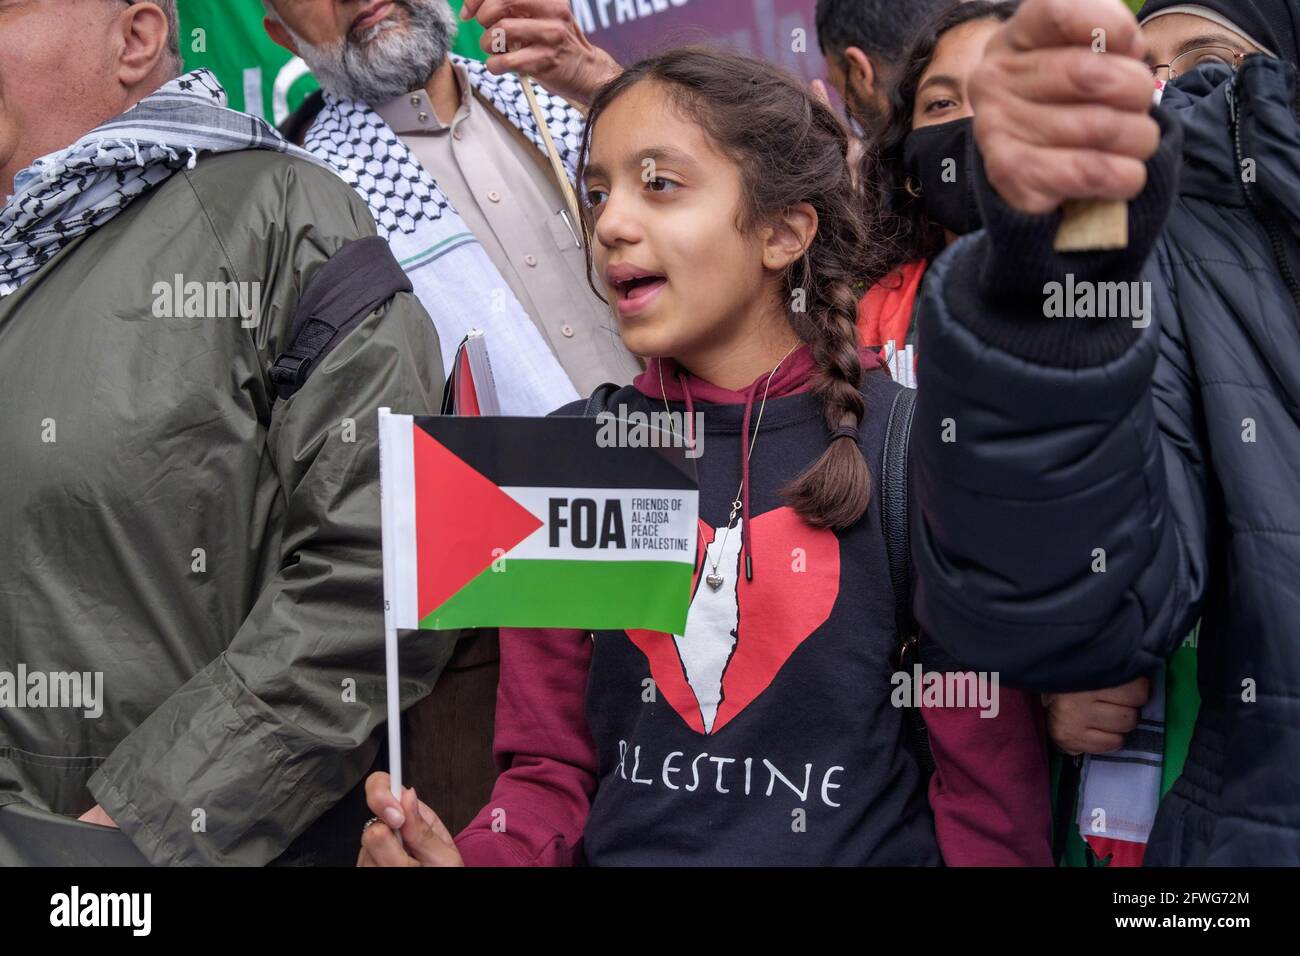 Londres, Royaume-Uni. 22 mai 2021. Un jeune supporter à la police de mars. Des milliers de personnes défilent à Londres pour appuyer la Palestine en appelant à la liberté pour la Palestine et à la fin du nettoyage ethnique des communautés palestiniennes, de l'occupation de la Palestine et des lois d'apartheid. Après les attaques israéliennes sur Gaza qui ont tué près de 250 personnes et en ont détruit une grande partie, ils appellent à un énorme effort international pour reconstruire Gaza et apporter une solution pacifique qui permettra à la Palestine et à Israël de vivre en paix et d'éviter de futures attaques. Peter Marshall/Alay Live News Banque D'Images